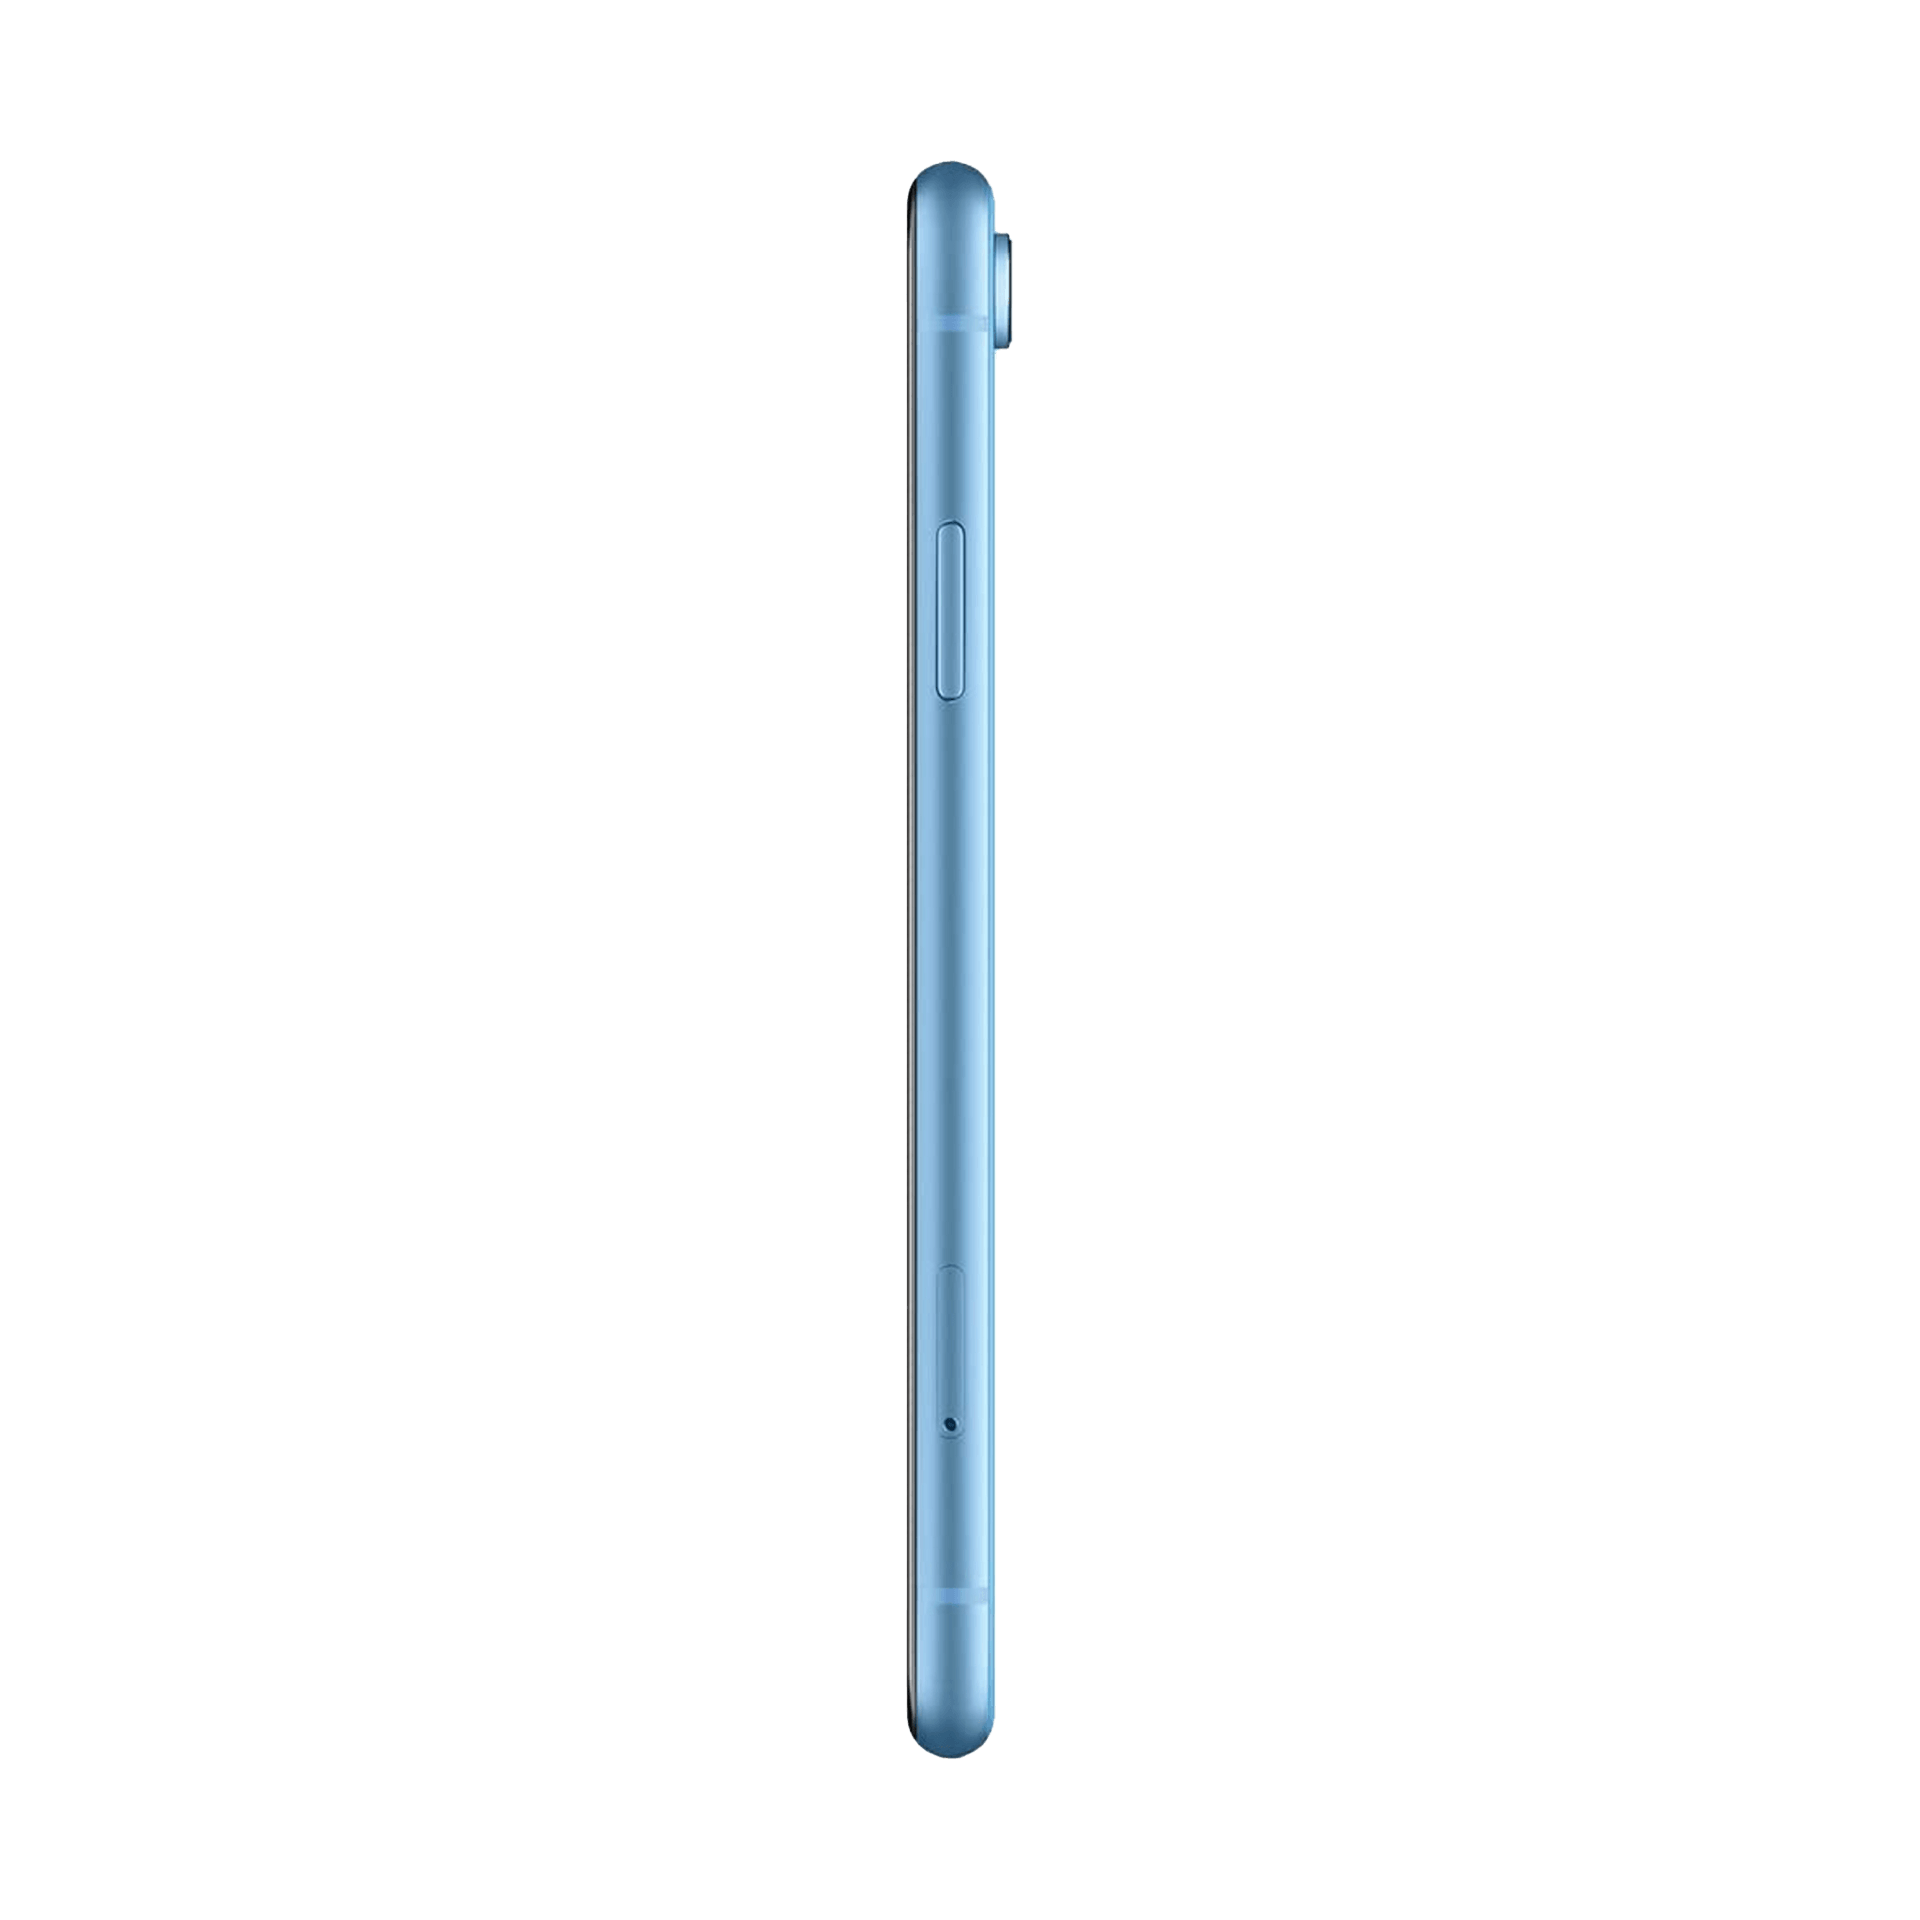 Smartphone APPLE iPhone XR Bleu 64 Go Reconditionné